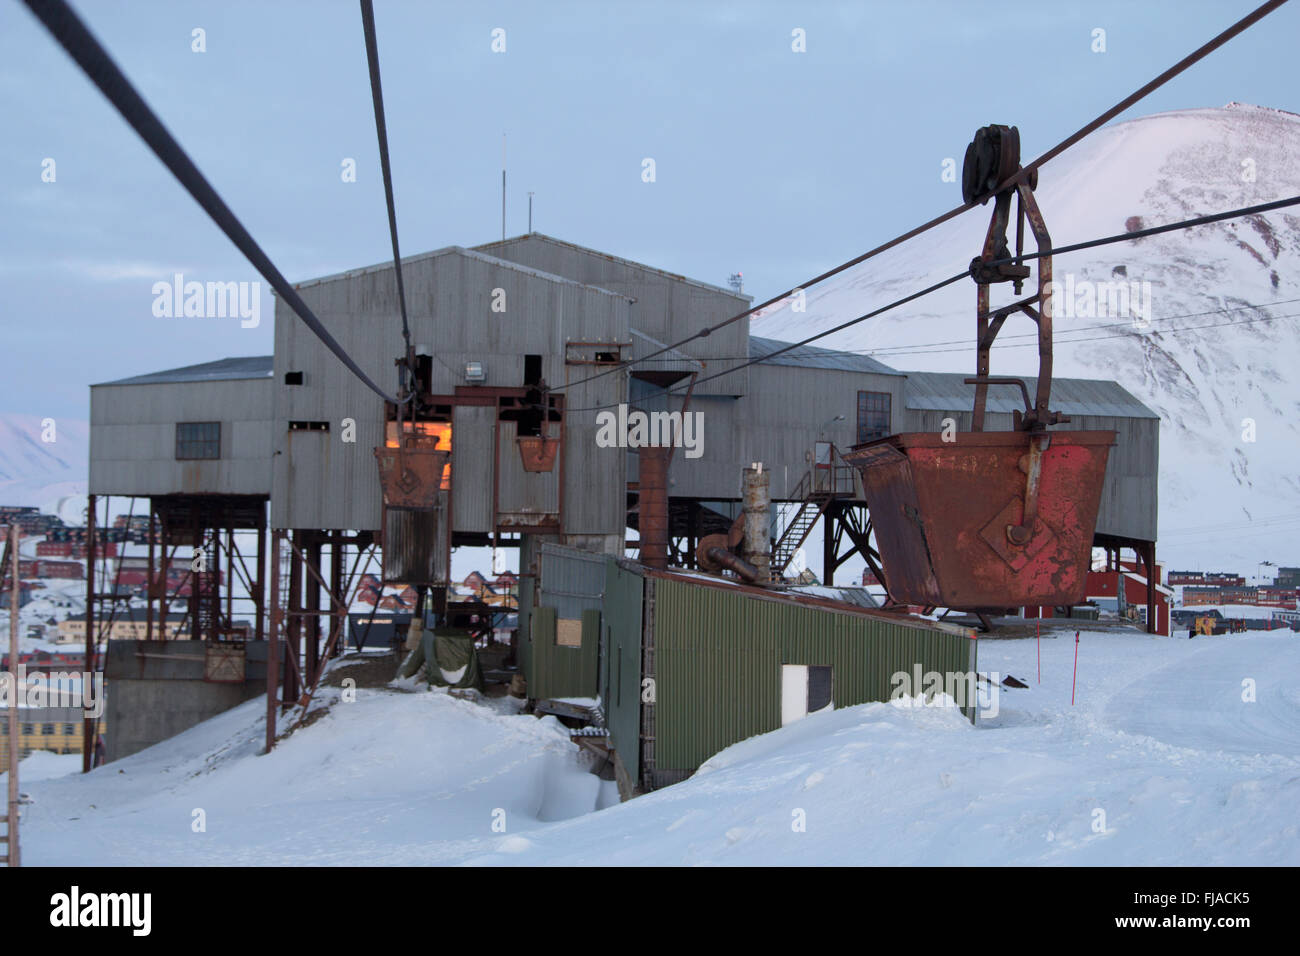 Alten Seilbahn auf Kohle transportieren in Longyearbyen, Spitzbergen (Svalbard). Norwegen Stockfoto